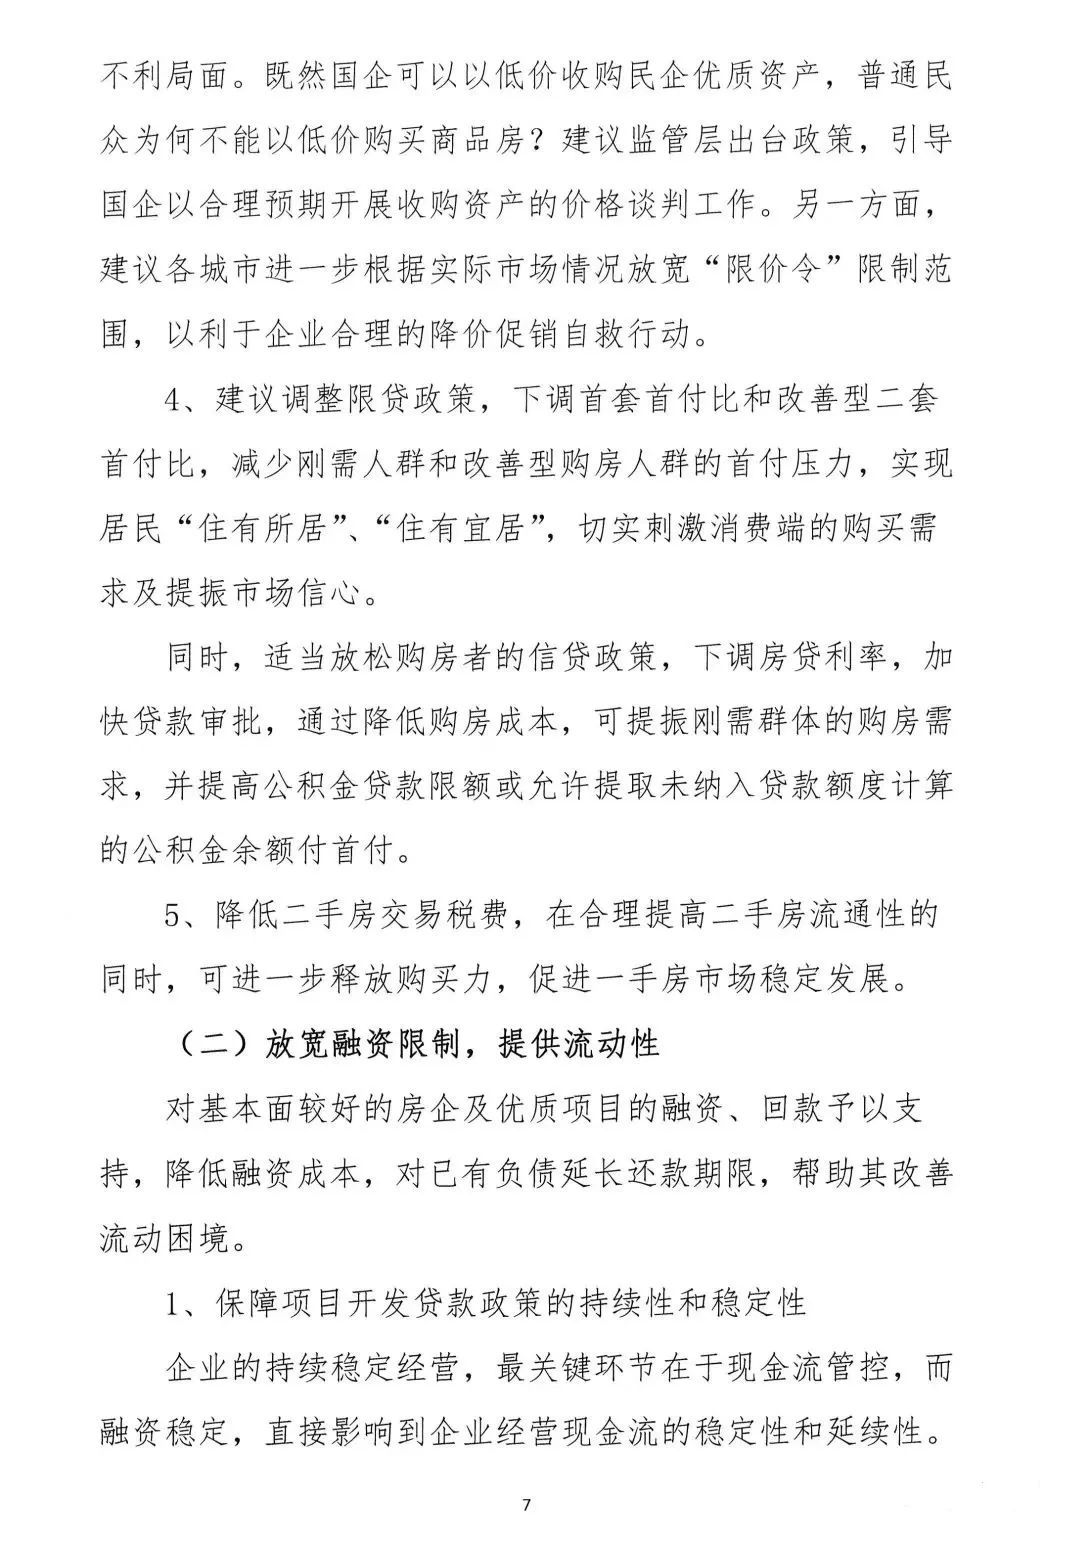 2022年6月6日，广东省地产商会向省住建厅递交了一份文件《关于促进房地产业平稳健康发展的意见和建议》粵地会〔2021〕1号。7.png